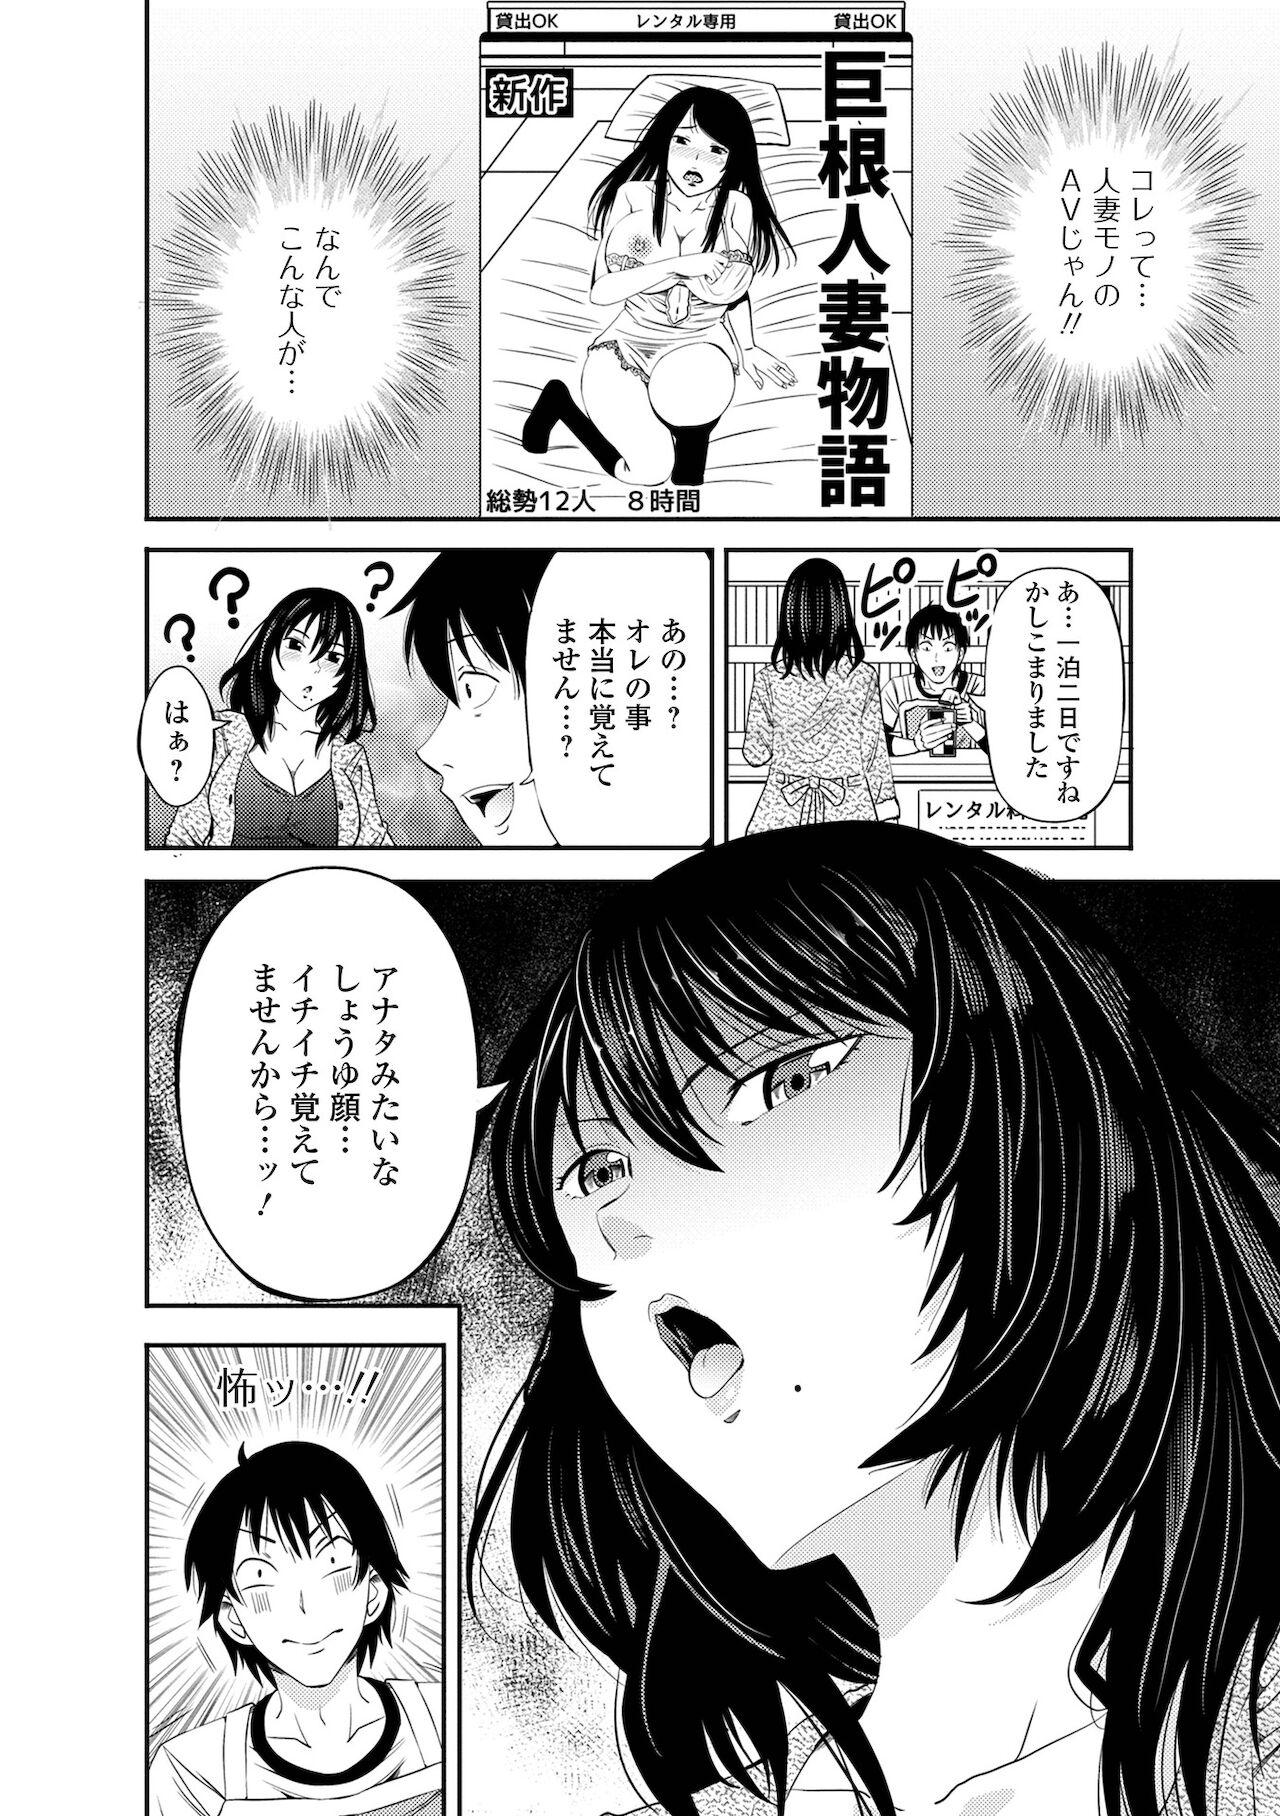 Shecock Web Haishin Gekkan Tonari no Kininaru Oku-san Vol. 053 Teamskeet - Page 6